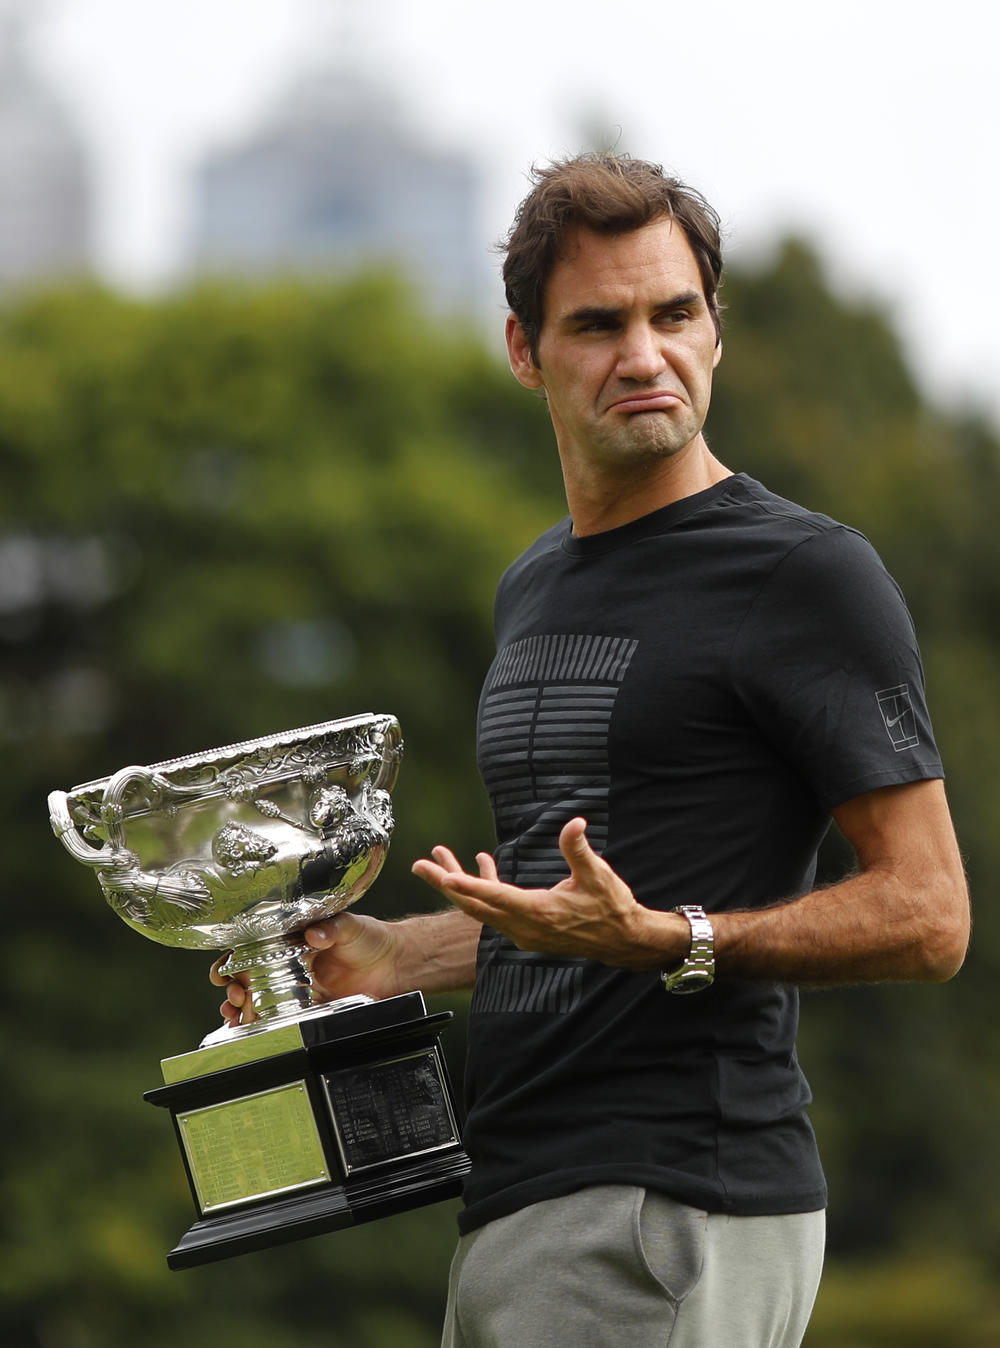 Rodžer Federer je osvojio svoju 6. titulu u Melburnu